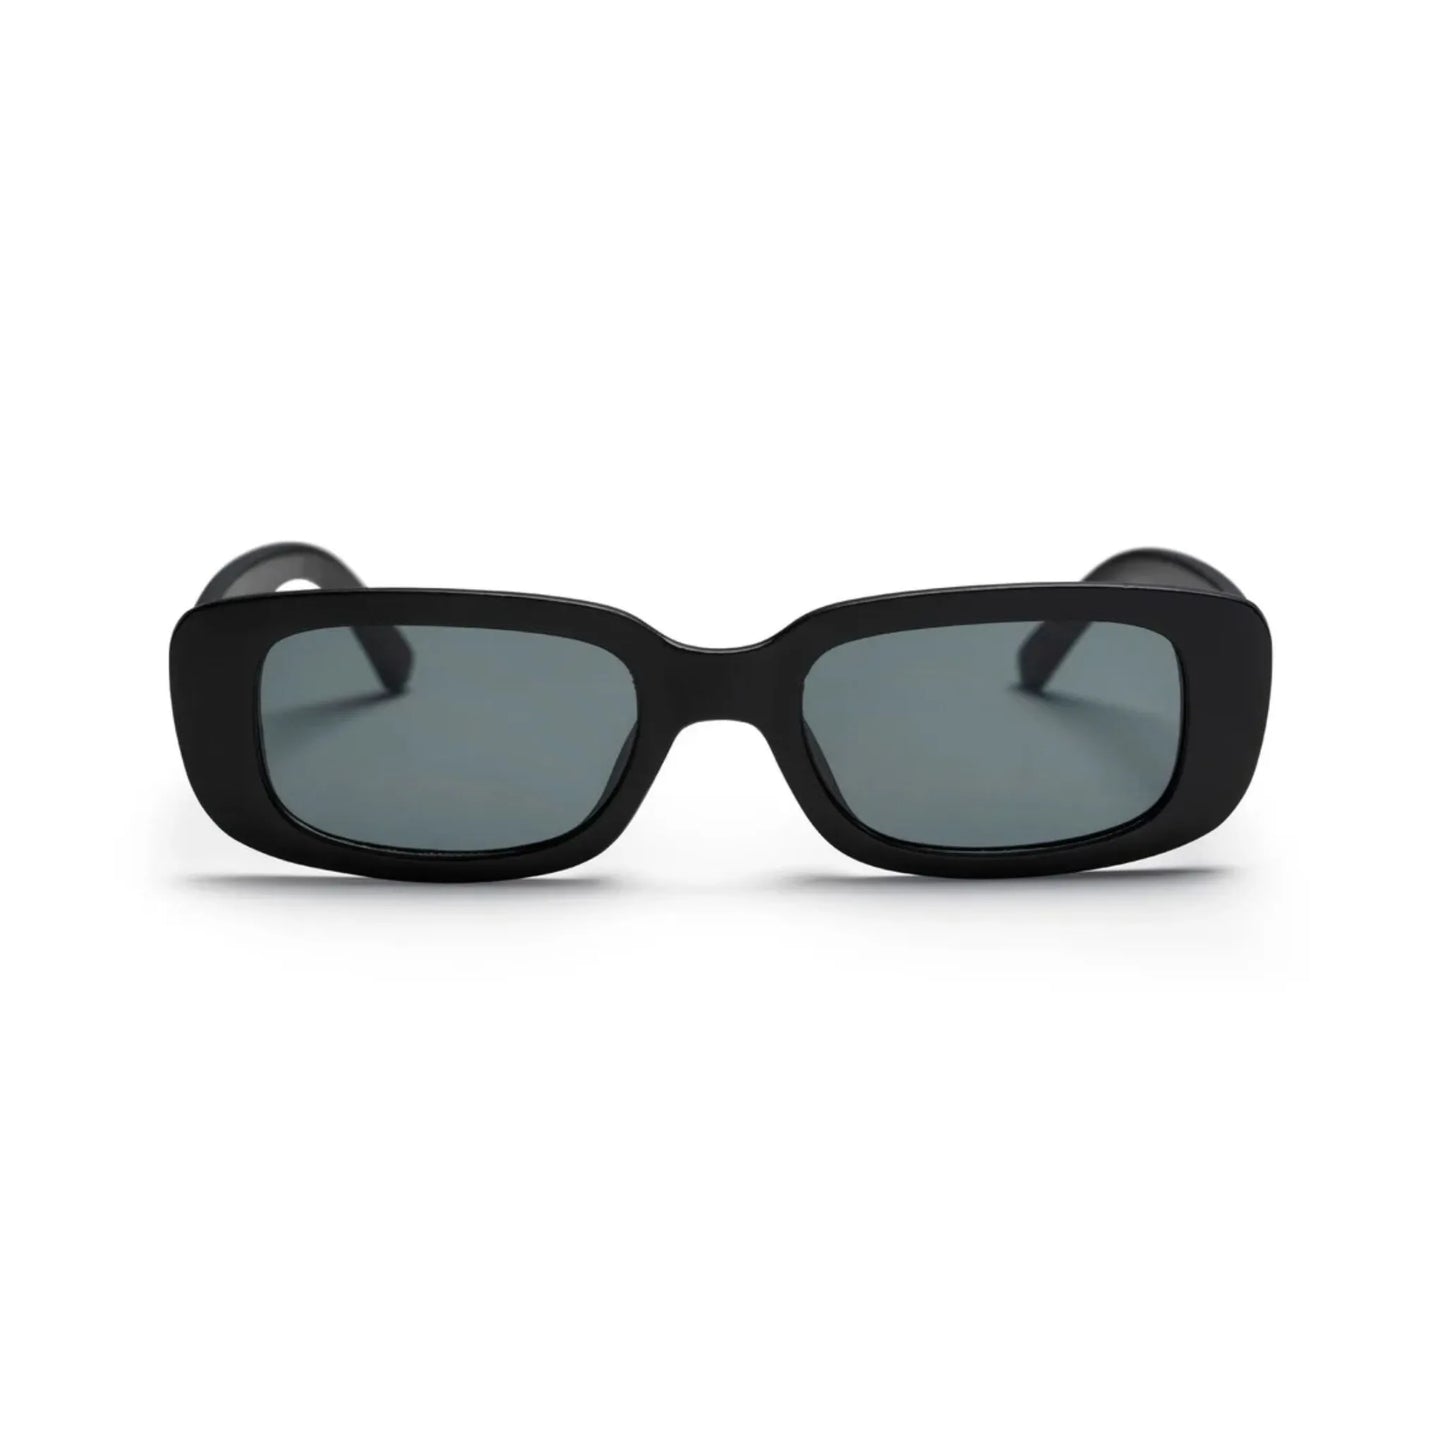 Οβάλ Γυαλιά ηλίου Kony της Exposure Sunglasses με προστασία UV400 σε μαύρο χρώμα σκελετού και μαύρο φακό.